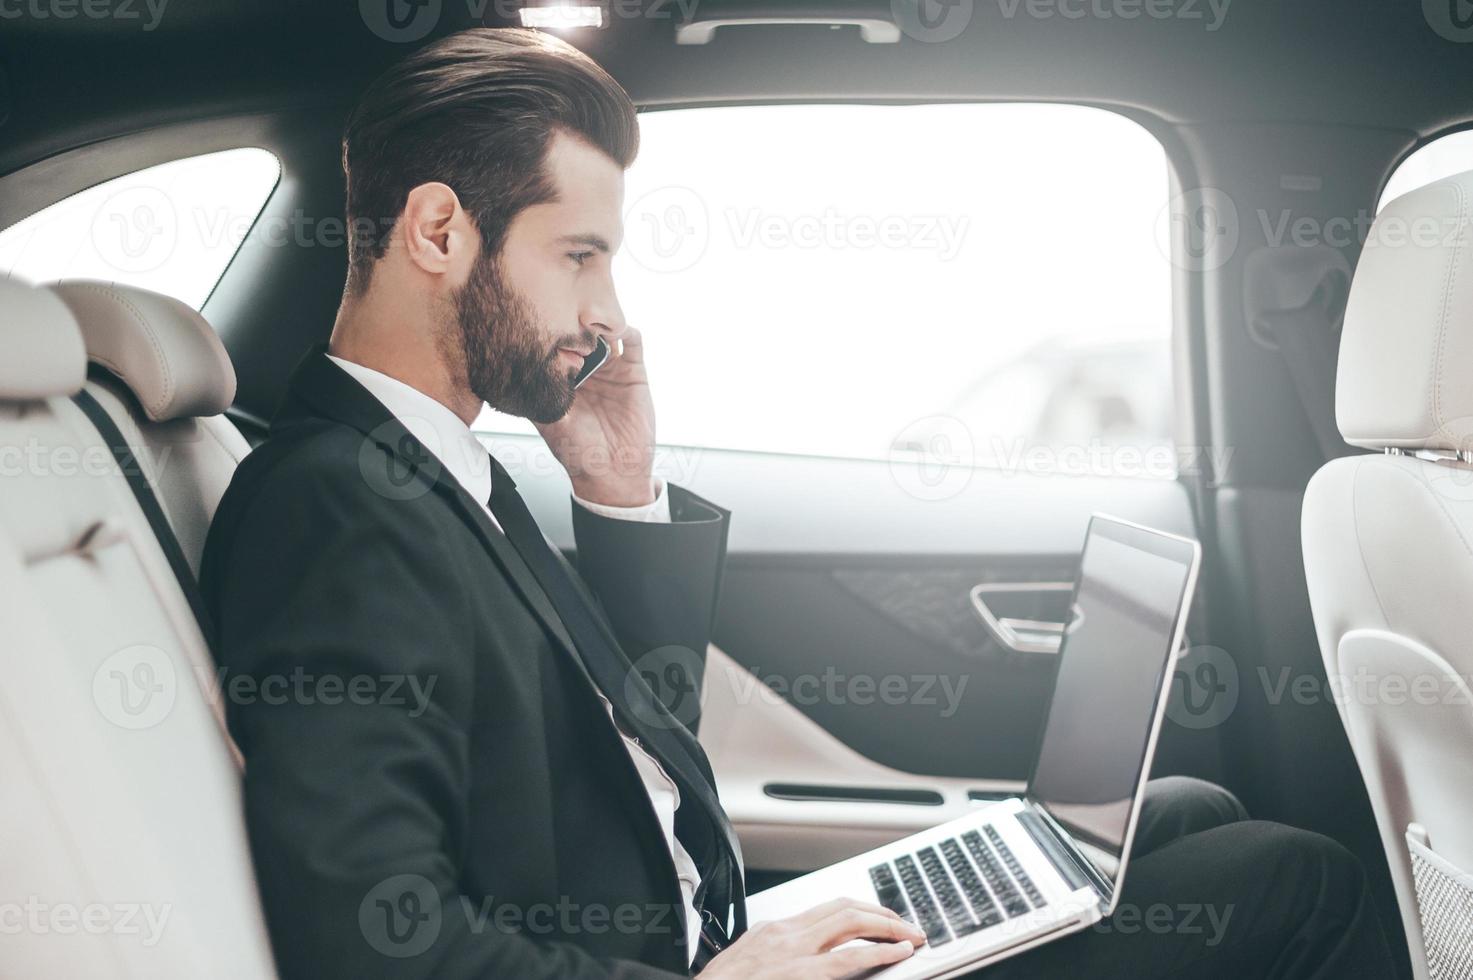 ocupado en el trabajo. joven hombre de negocios confiado trabajando en su laptop y hablando por teléfono mientras está sentado en el auto foto